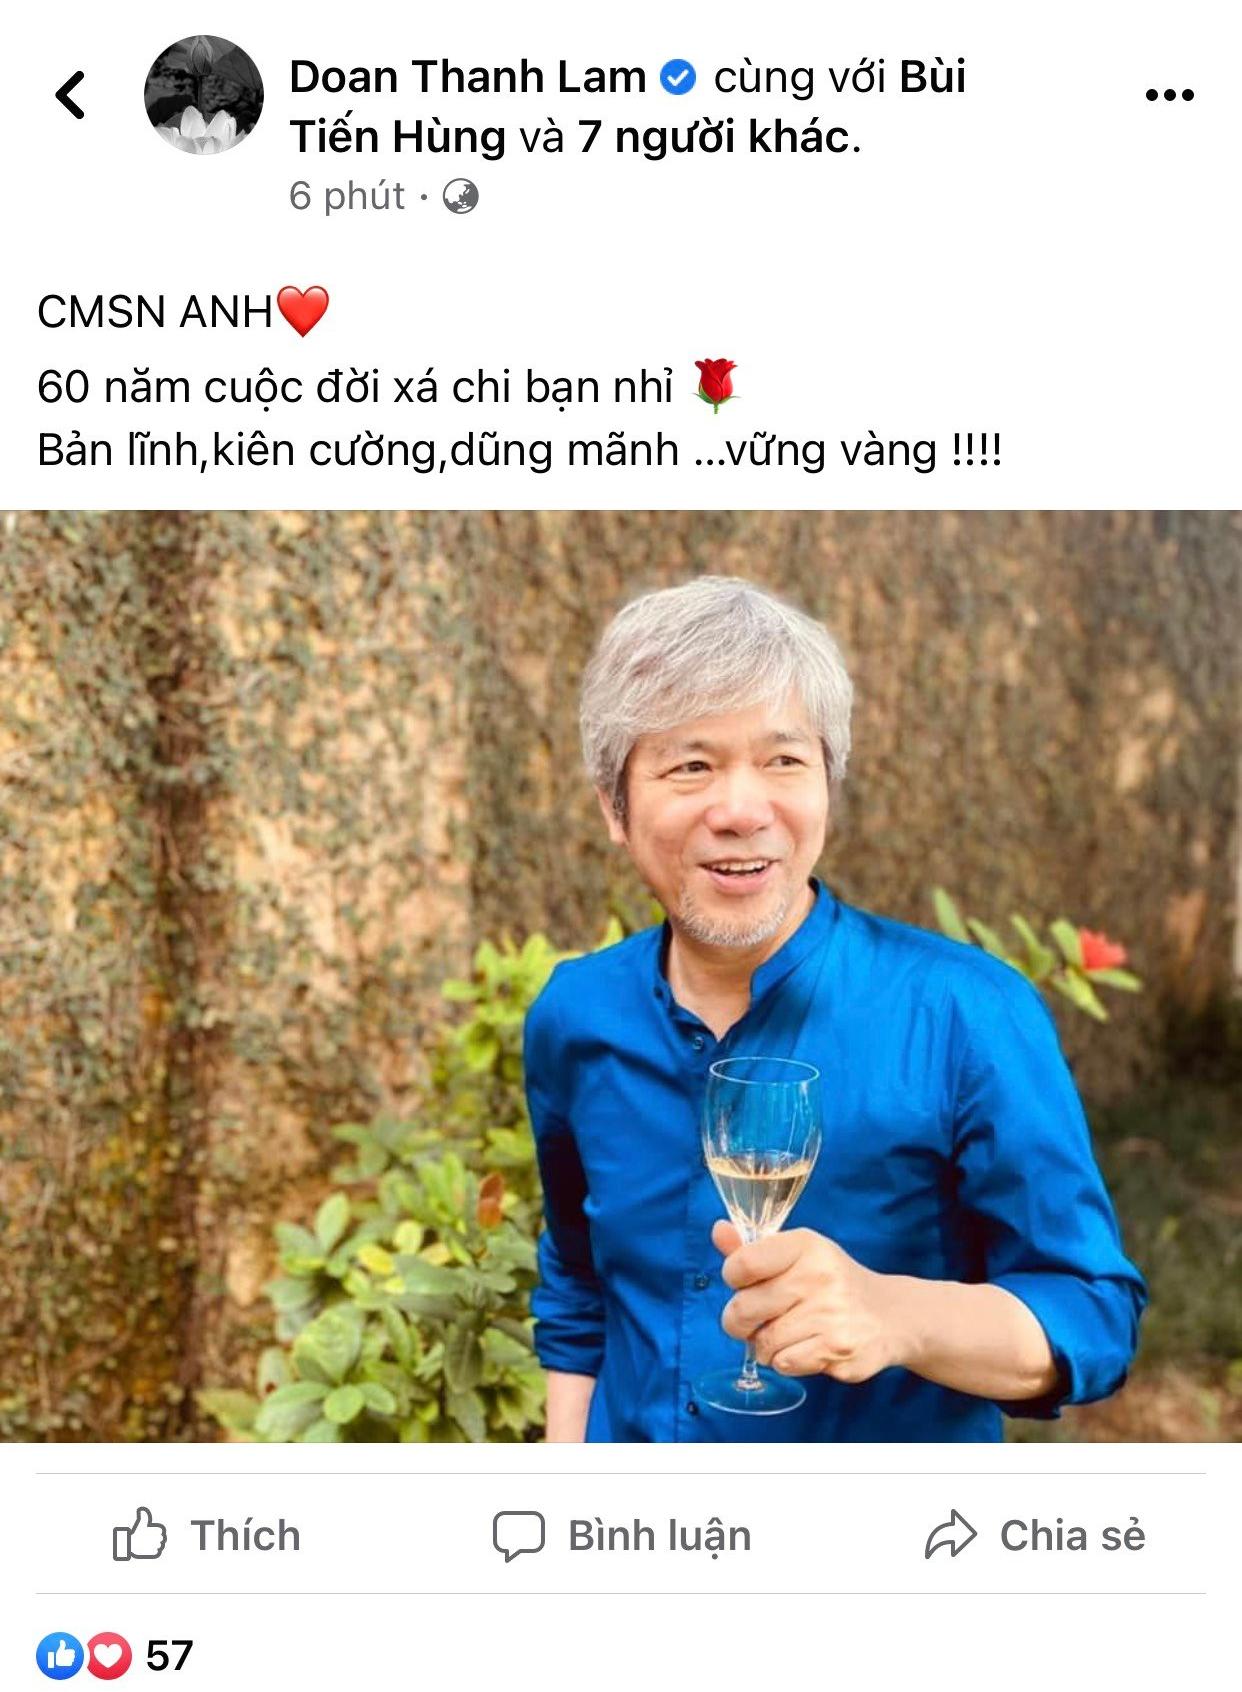 Bài viết mới đây mà ca sĩ Thanh Lam đăng tải, nhắn nhủ đến ông xã Bùi Tiến Hùng